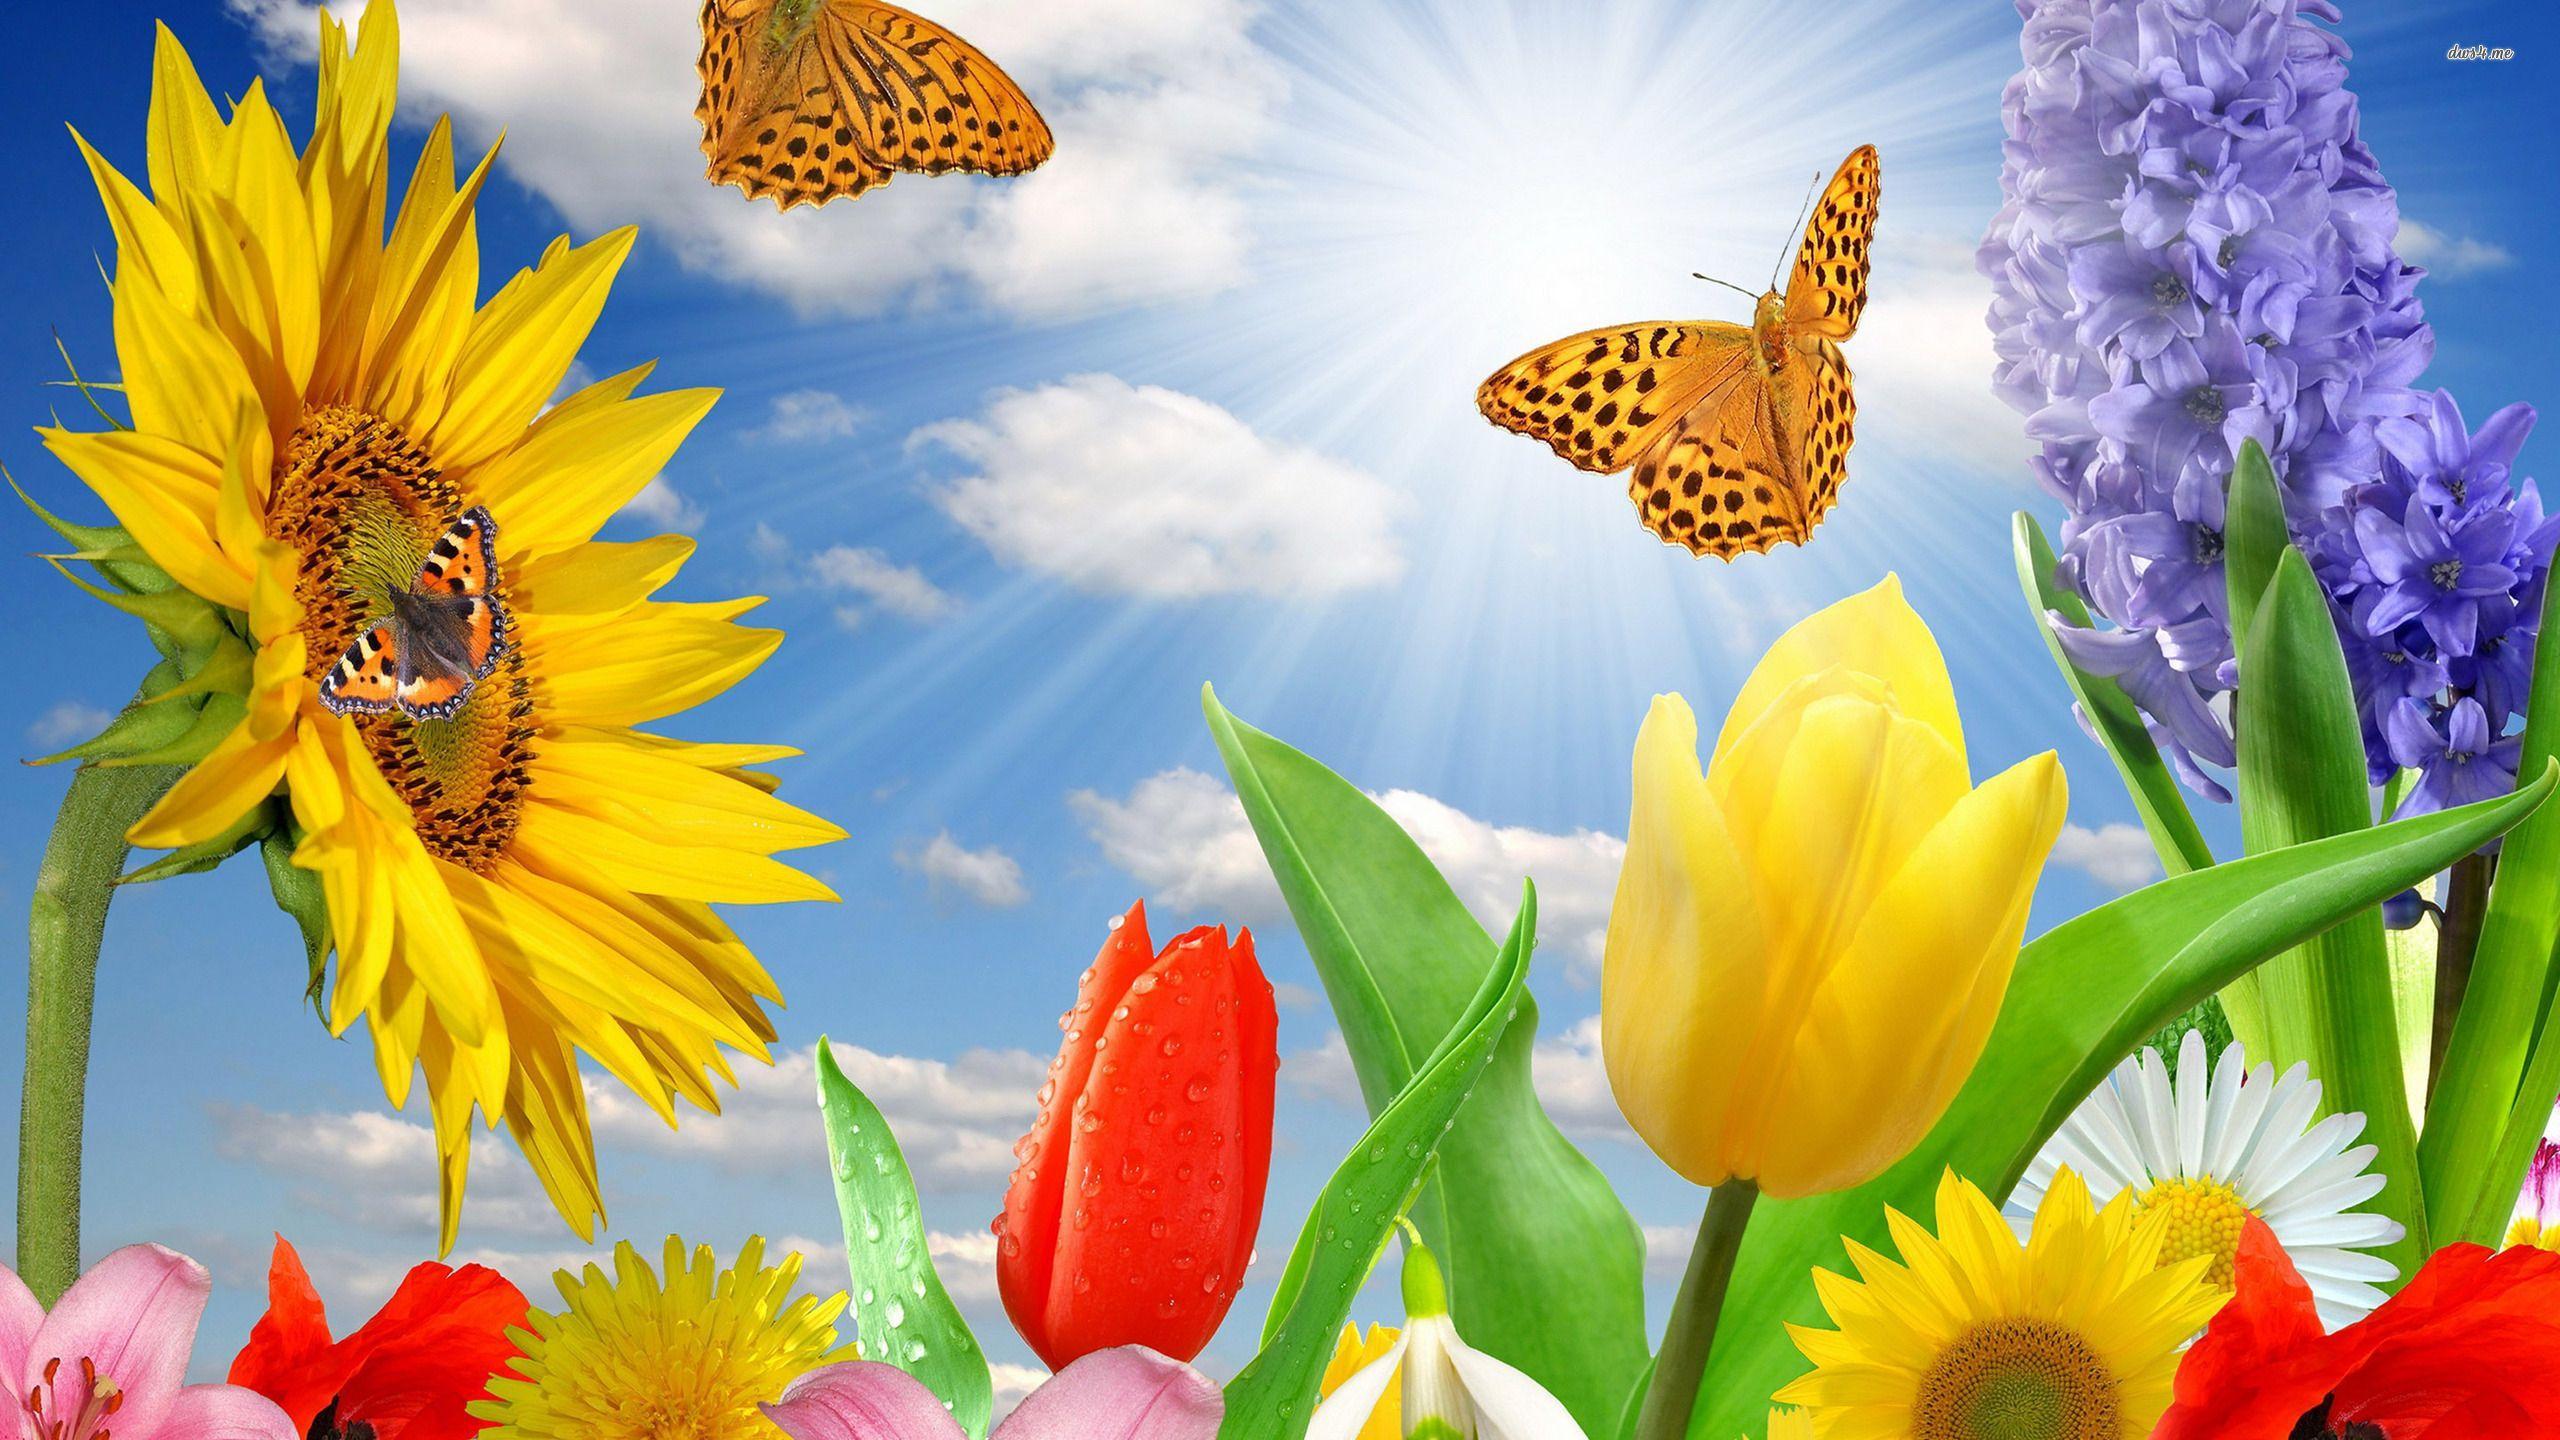 Spring Butterflies Wallpaper